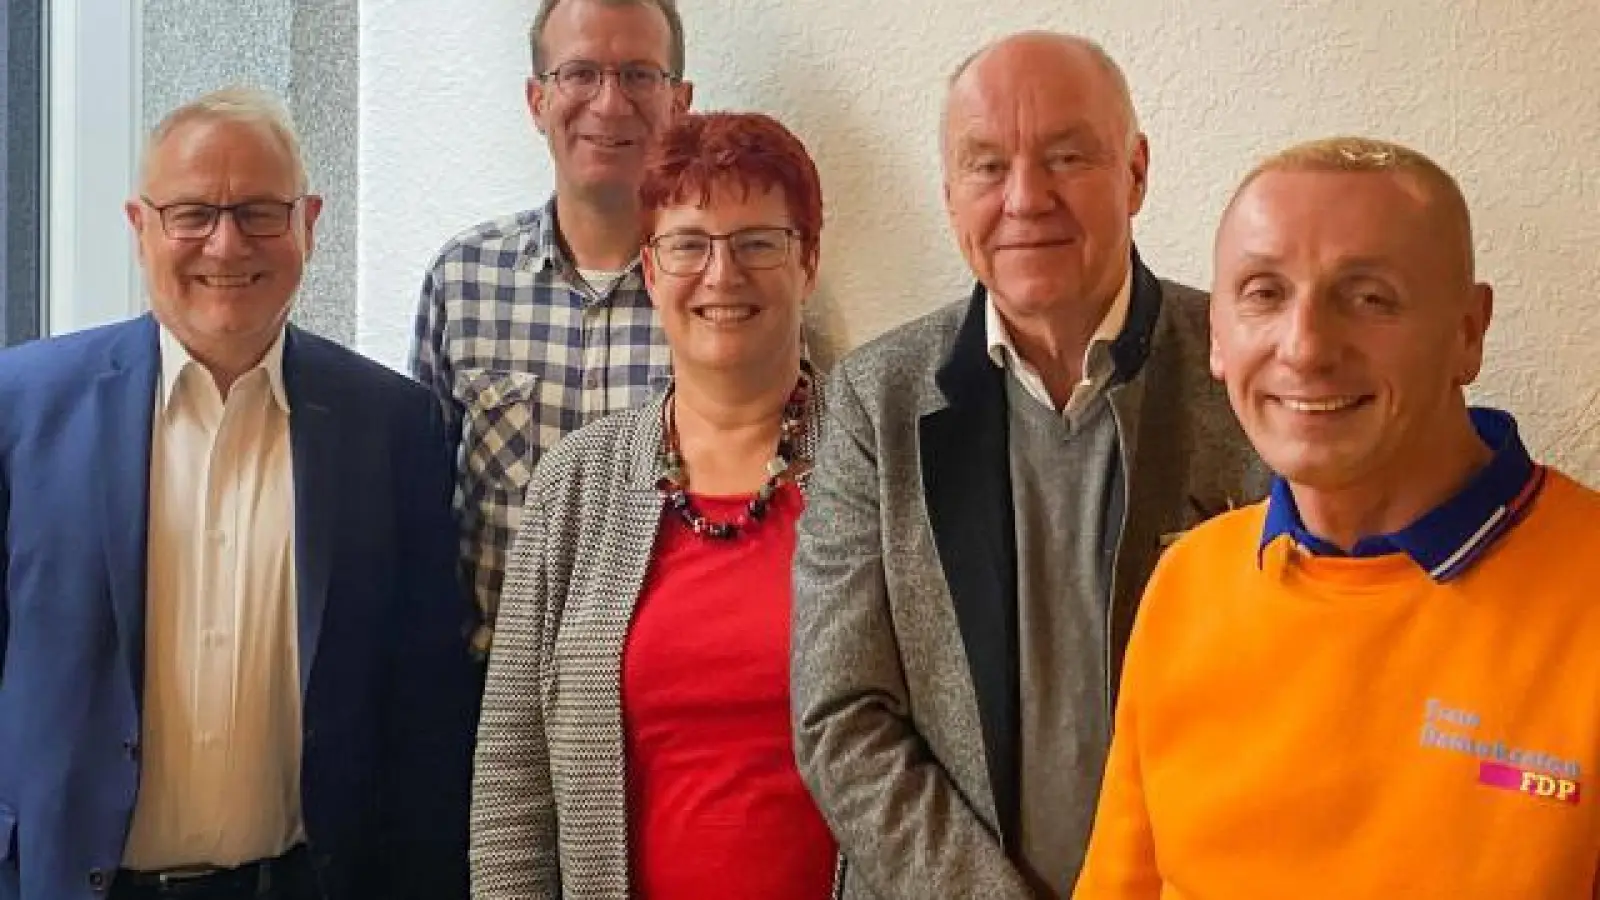 Sie schickt die FDP   ins Rennen bei den anstehenden Wahlen: (von links) FDP-Kreisvorsitzender Karlheinz Faller, Thomas Quante (Listenkandidat Bezirkstag), Dr. Birgit Geier (Listenkandidatin Landtag), Lutz Stammnitz (Direktkandidat Landtag) und Oliver Sommer (Direktkandidat Bezirkstag). 	Foto: Bodo Böhnke (Foto: Bodo Böhnke)